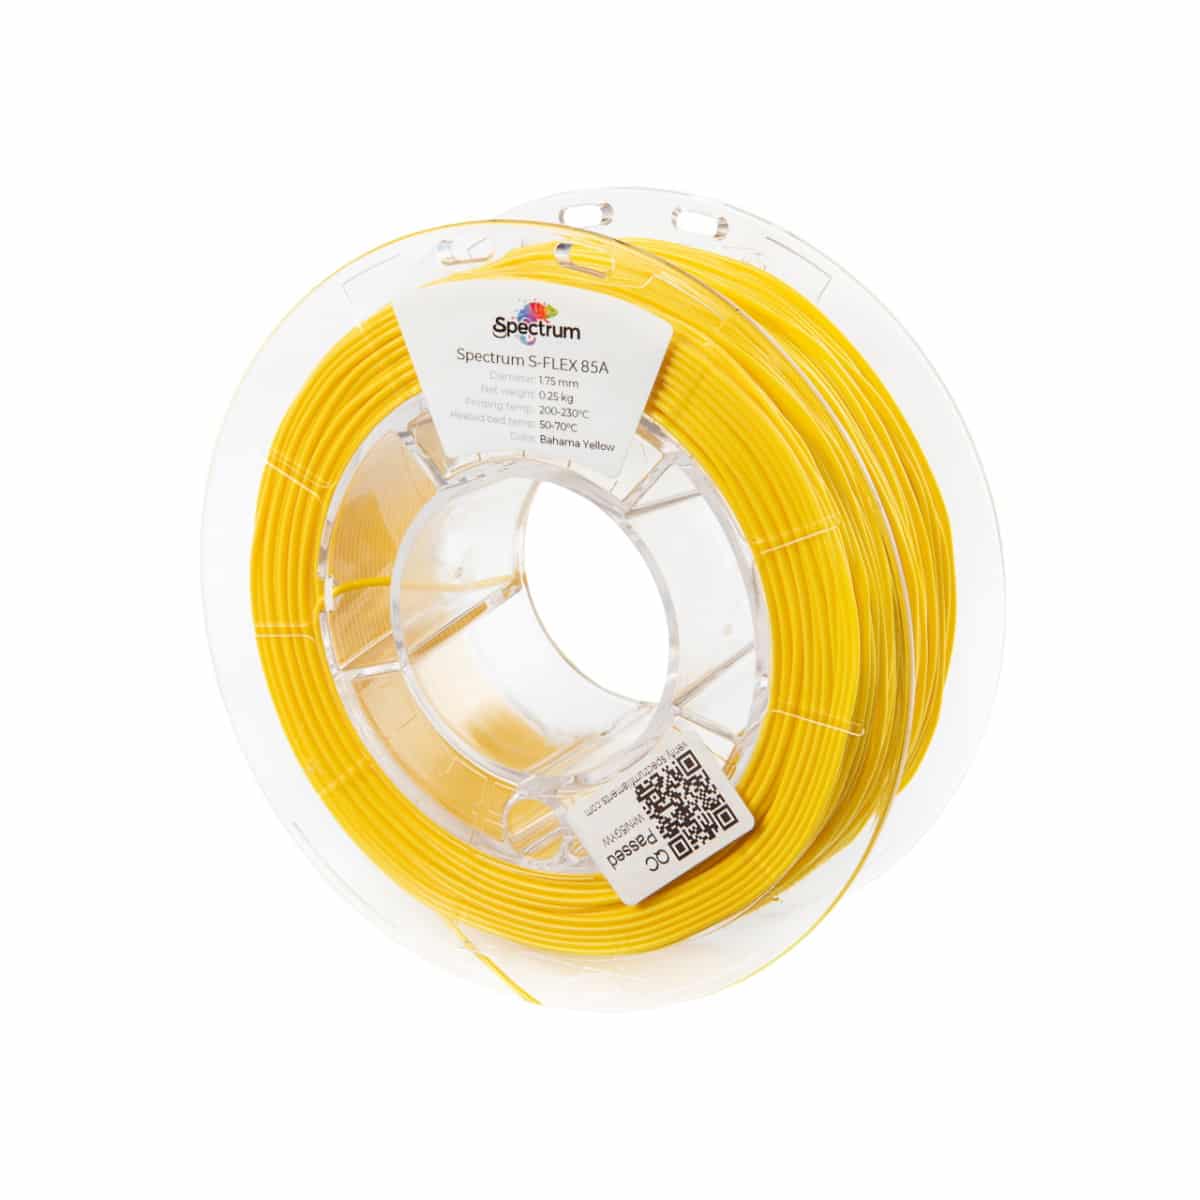 Køb Spectrum Filaments - S-Flex 85A - 1.75mm - Bahama Yellow - 0.25kg 3d printer - Pris 140.00 kr.